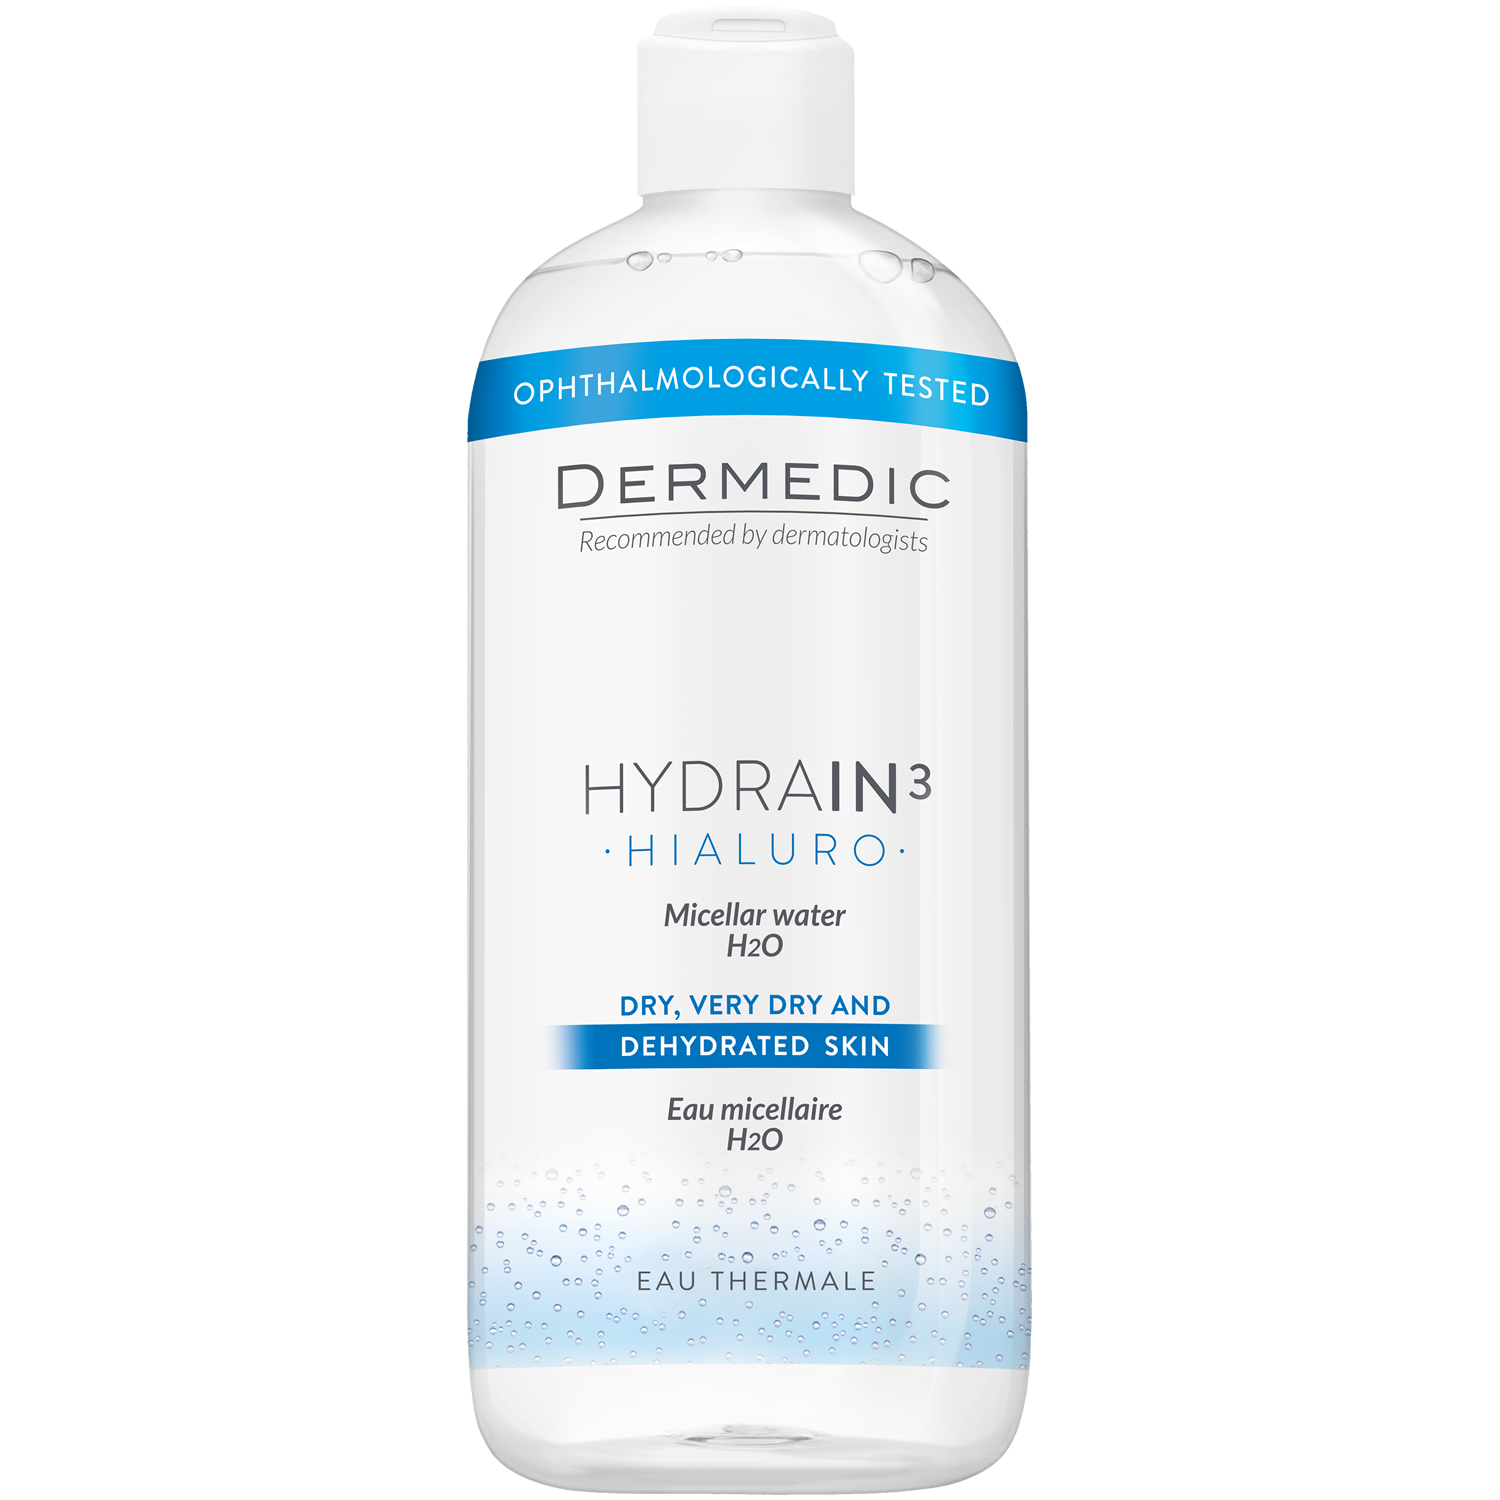 Dermedic Hydrain3 Hialuro мицеллярная вода H2O для лица, 500 мл dermedic мицеллярная вода h2o 500 мл х2 шт dermedic hydrain3